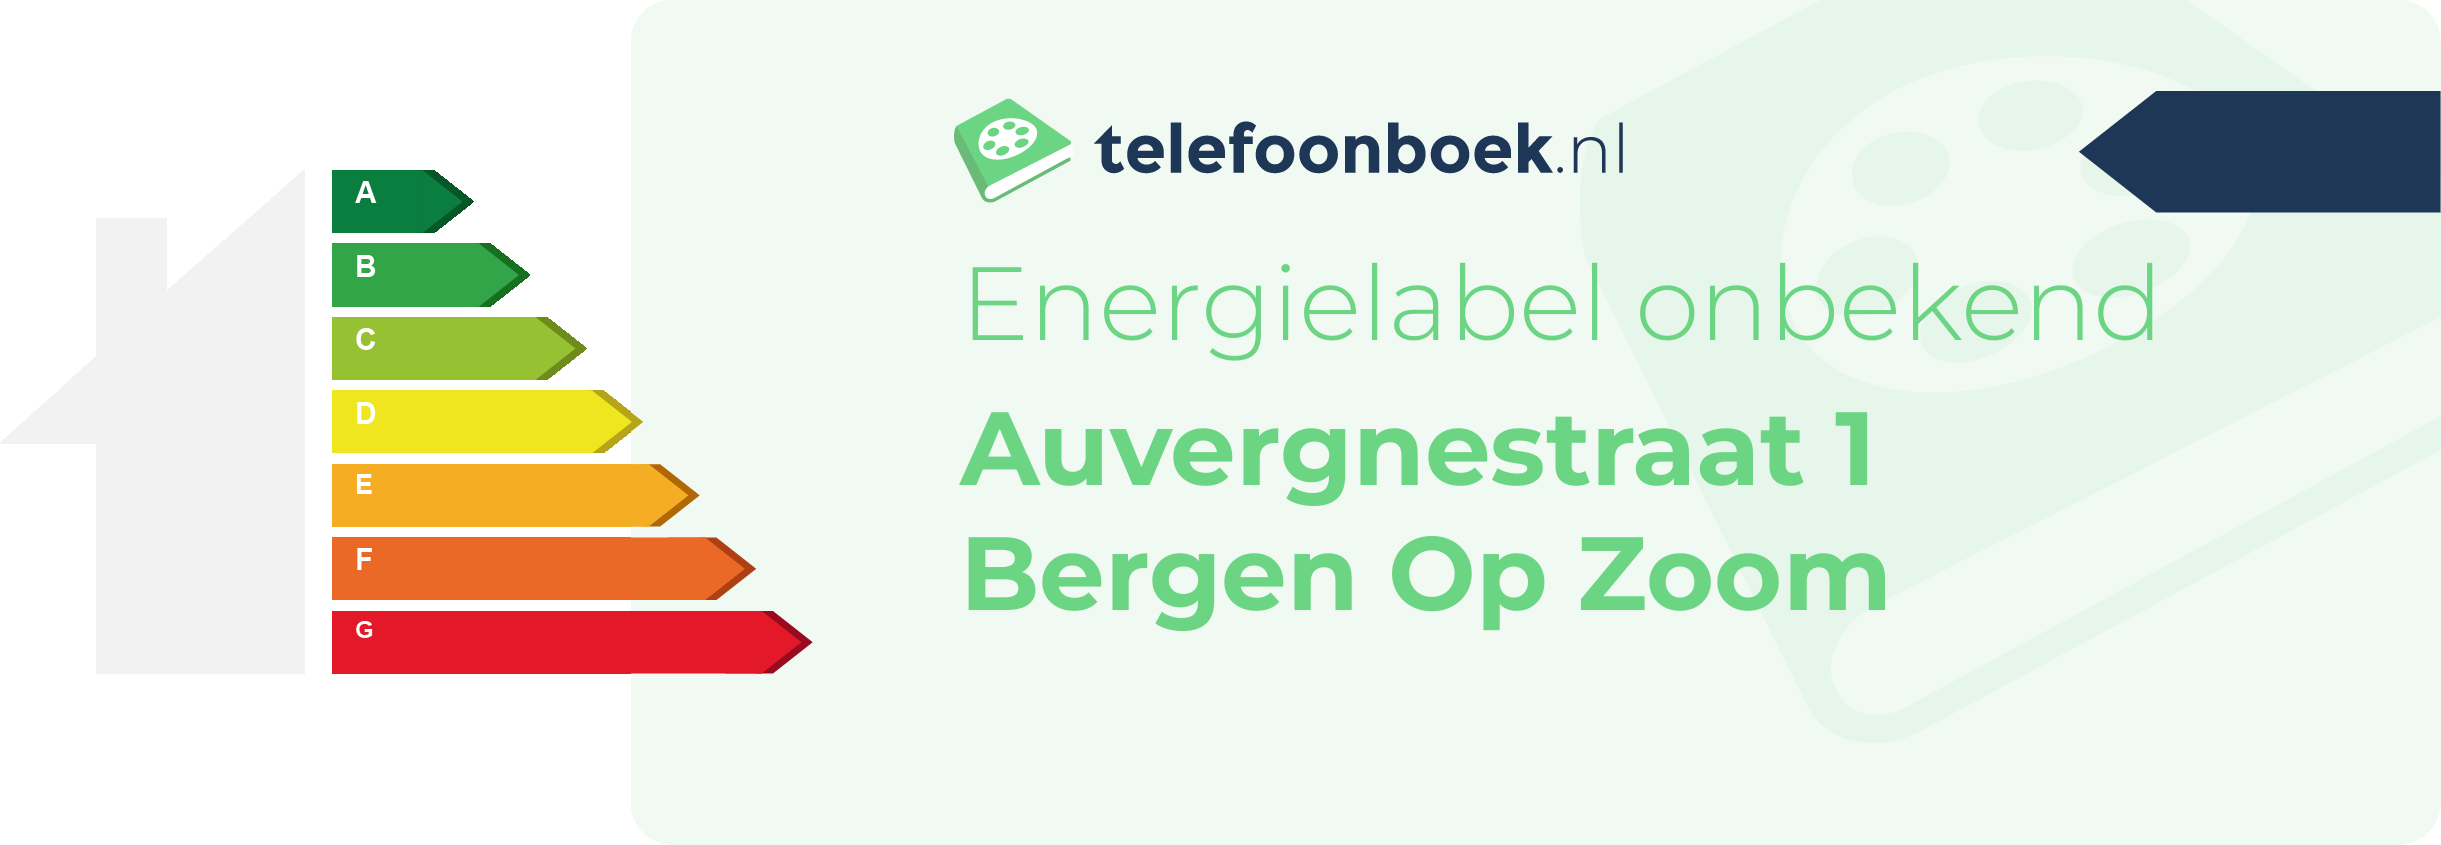 Energielabel Auvergnestraat 1 Bergen Op Zoom